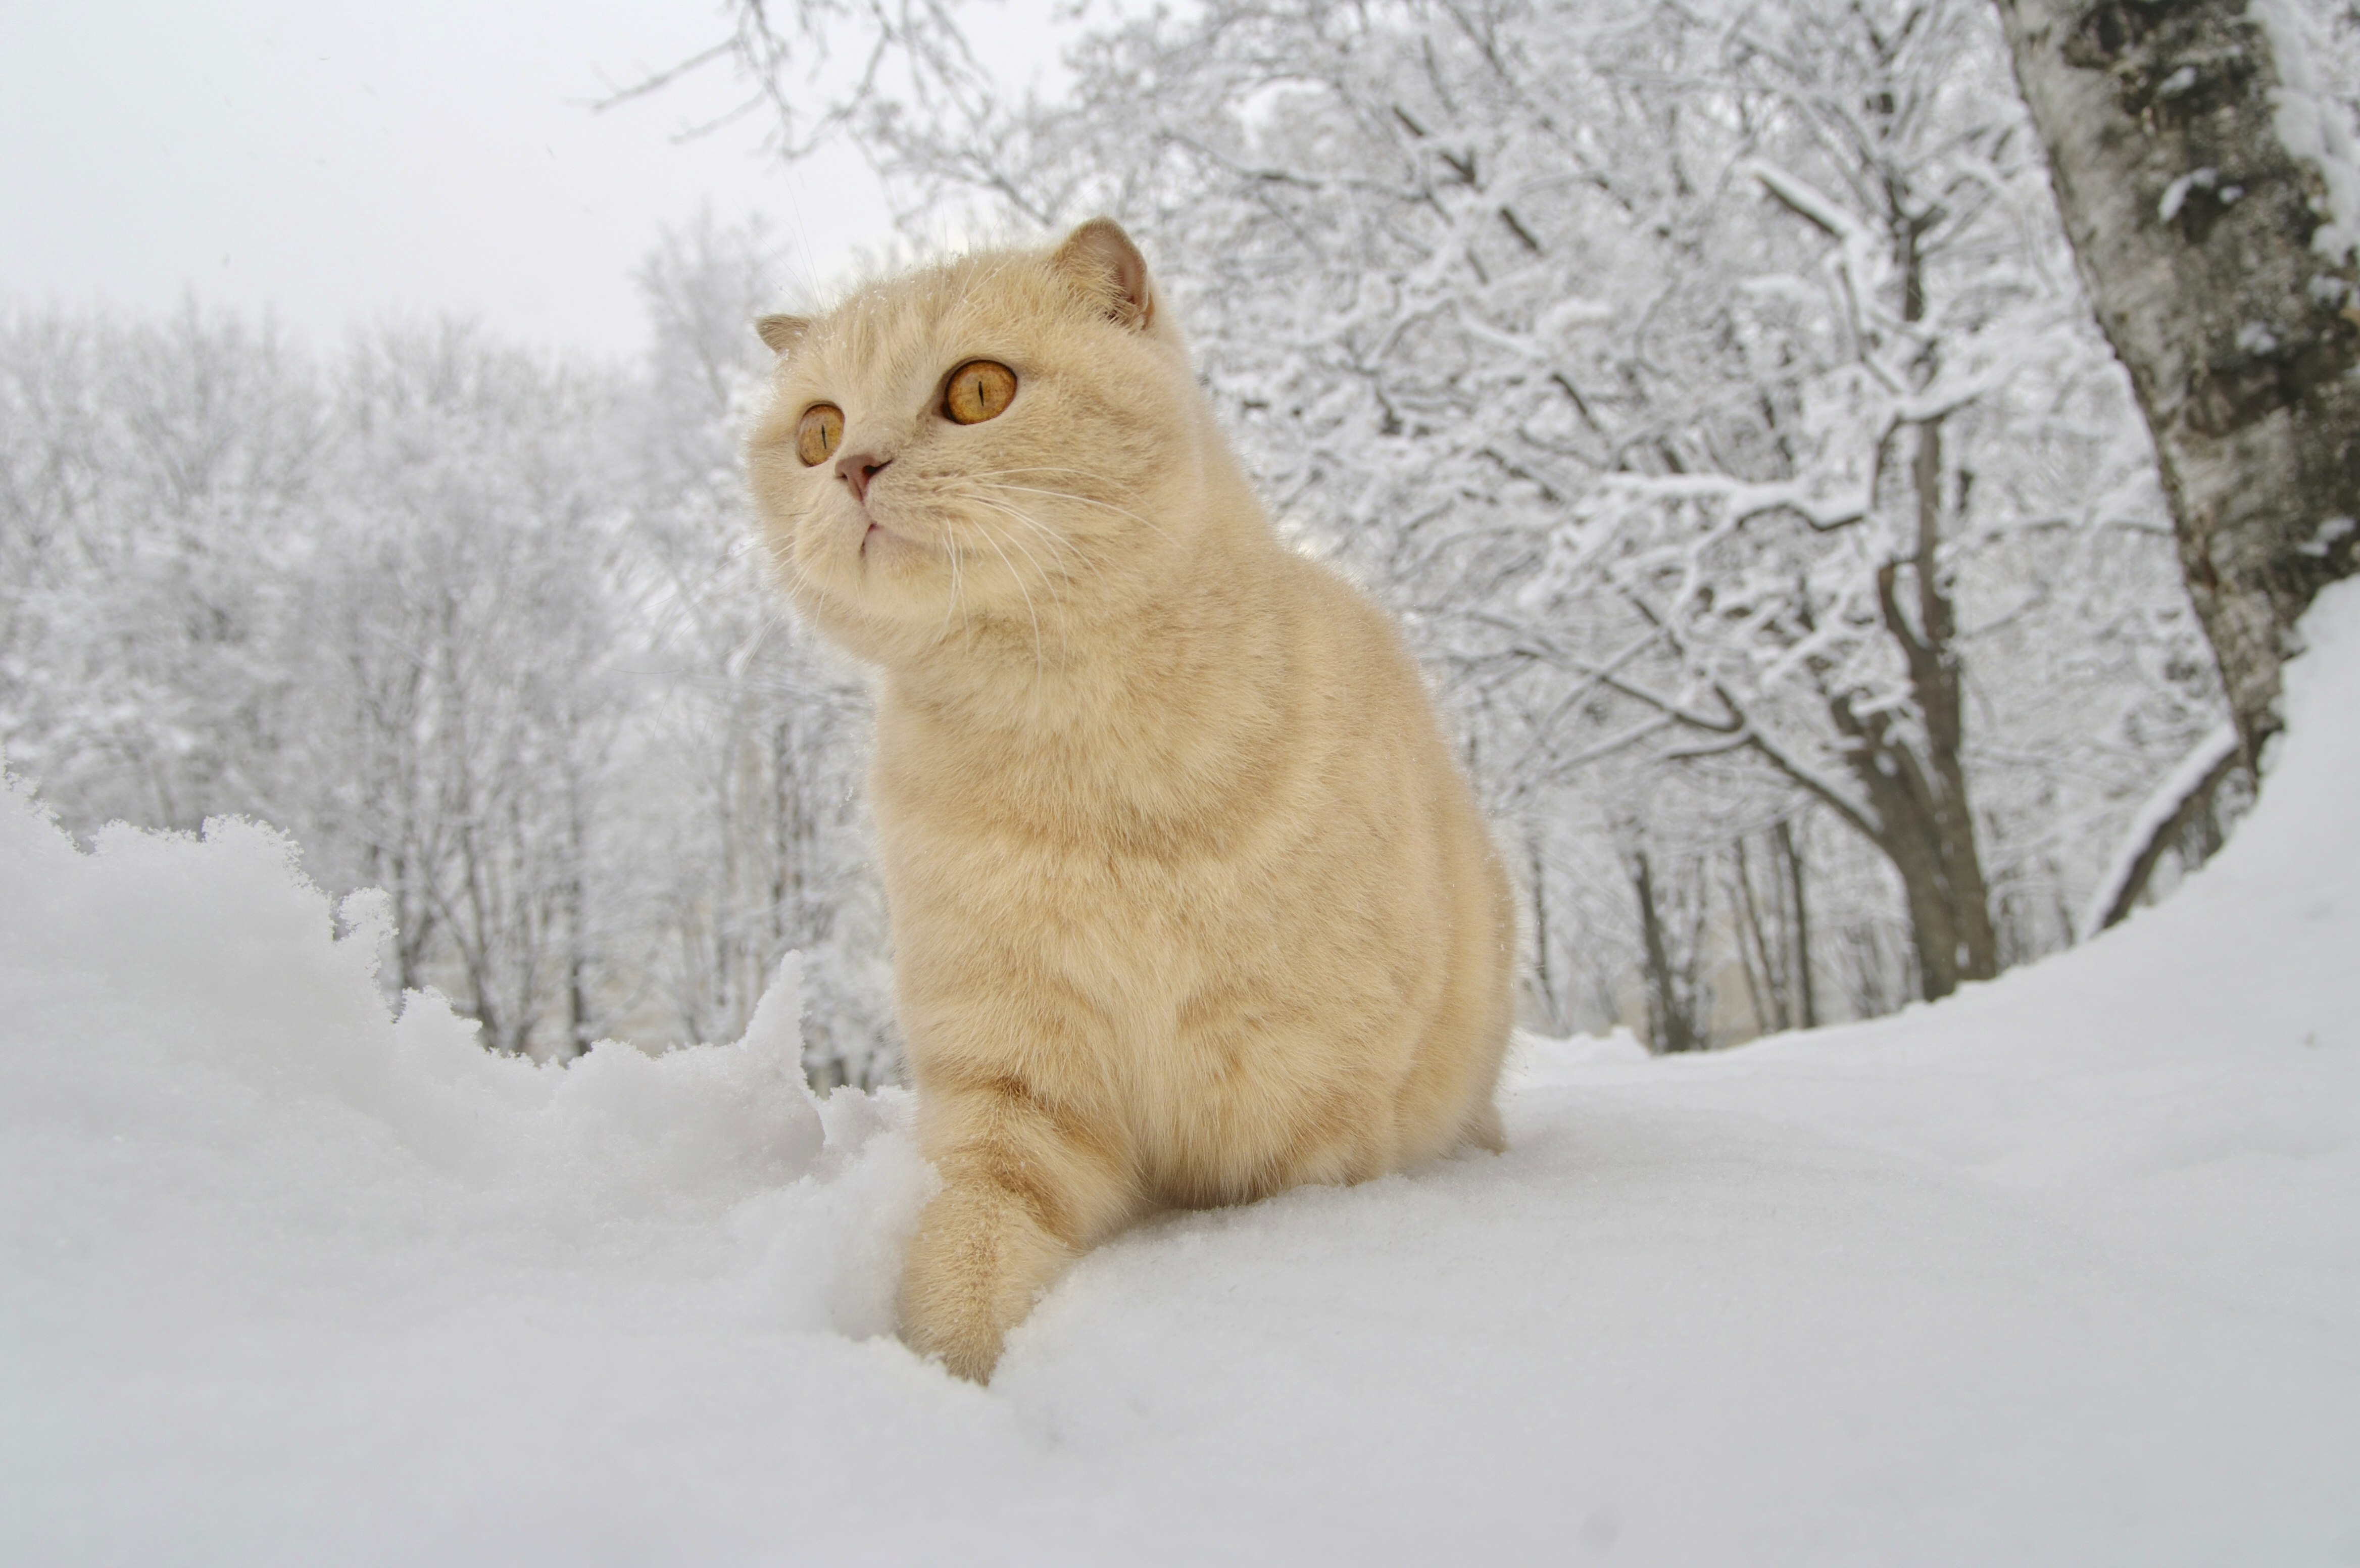 Скачать обои бесплатно Животные, Зима, Снег, Кошка, Кошки картинка на рабочий стол ПК